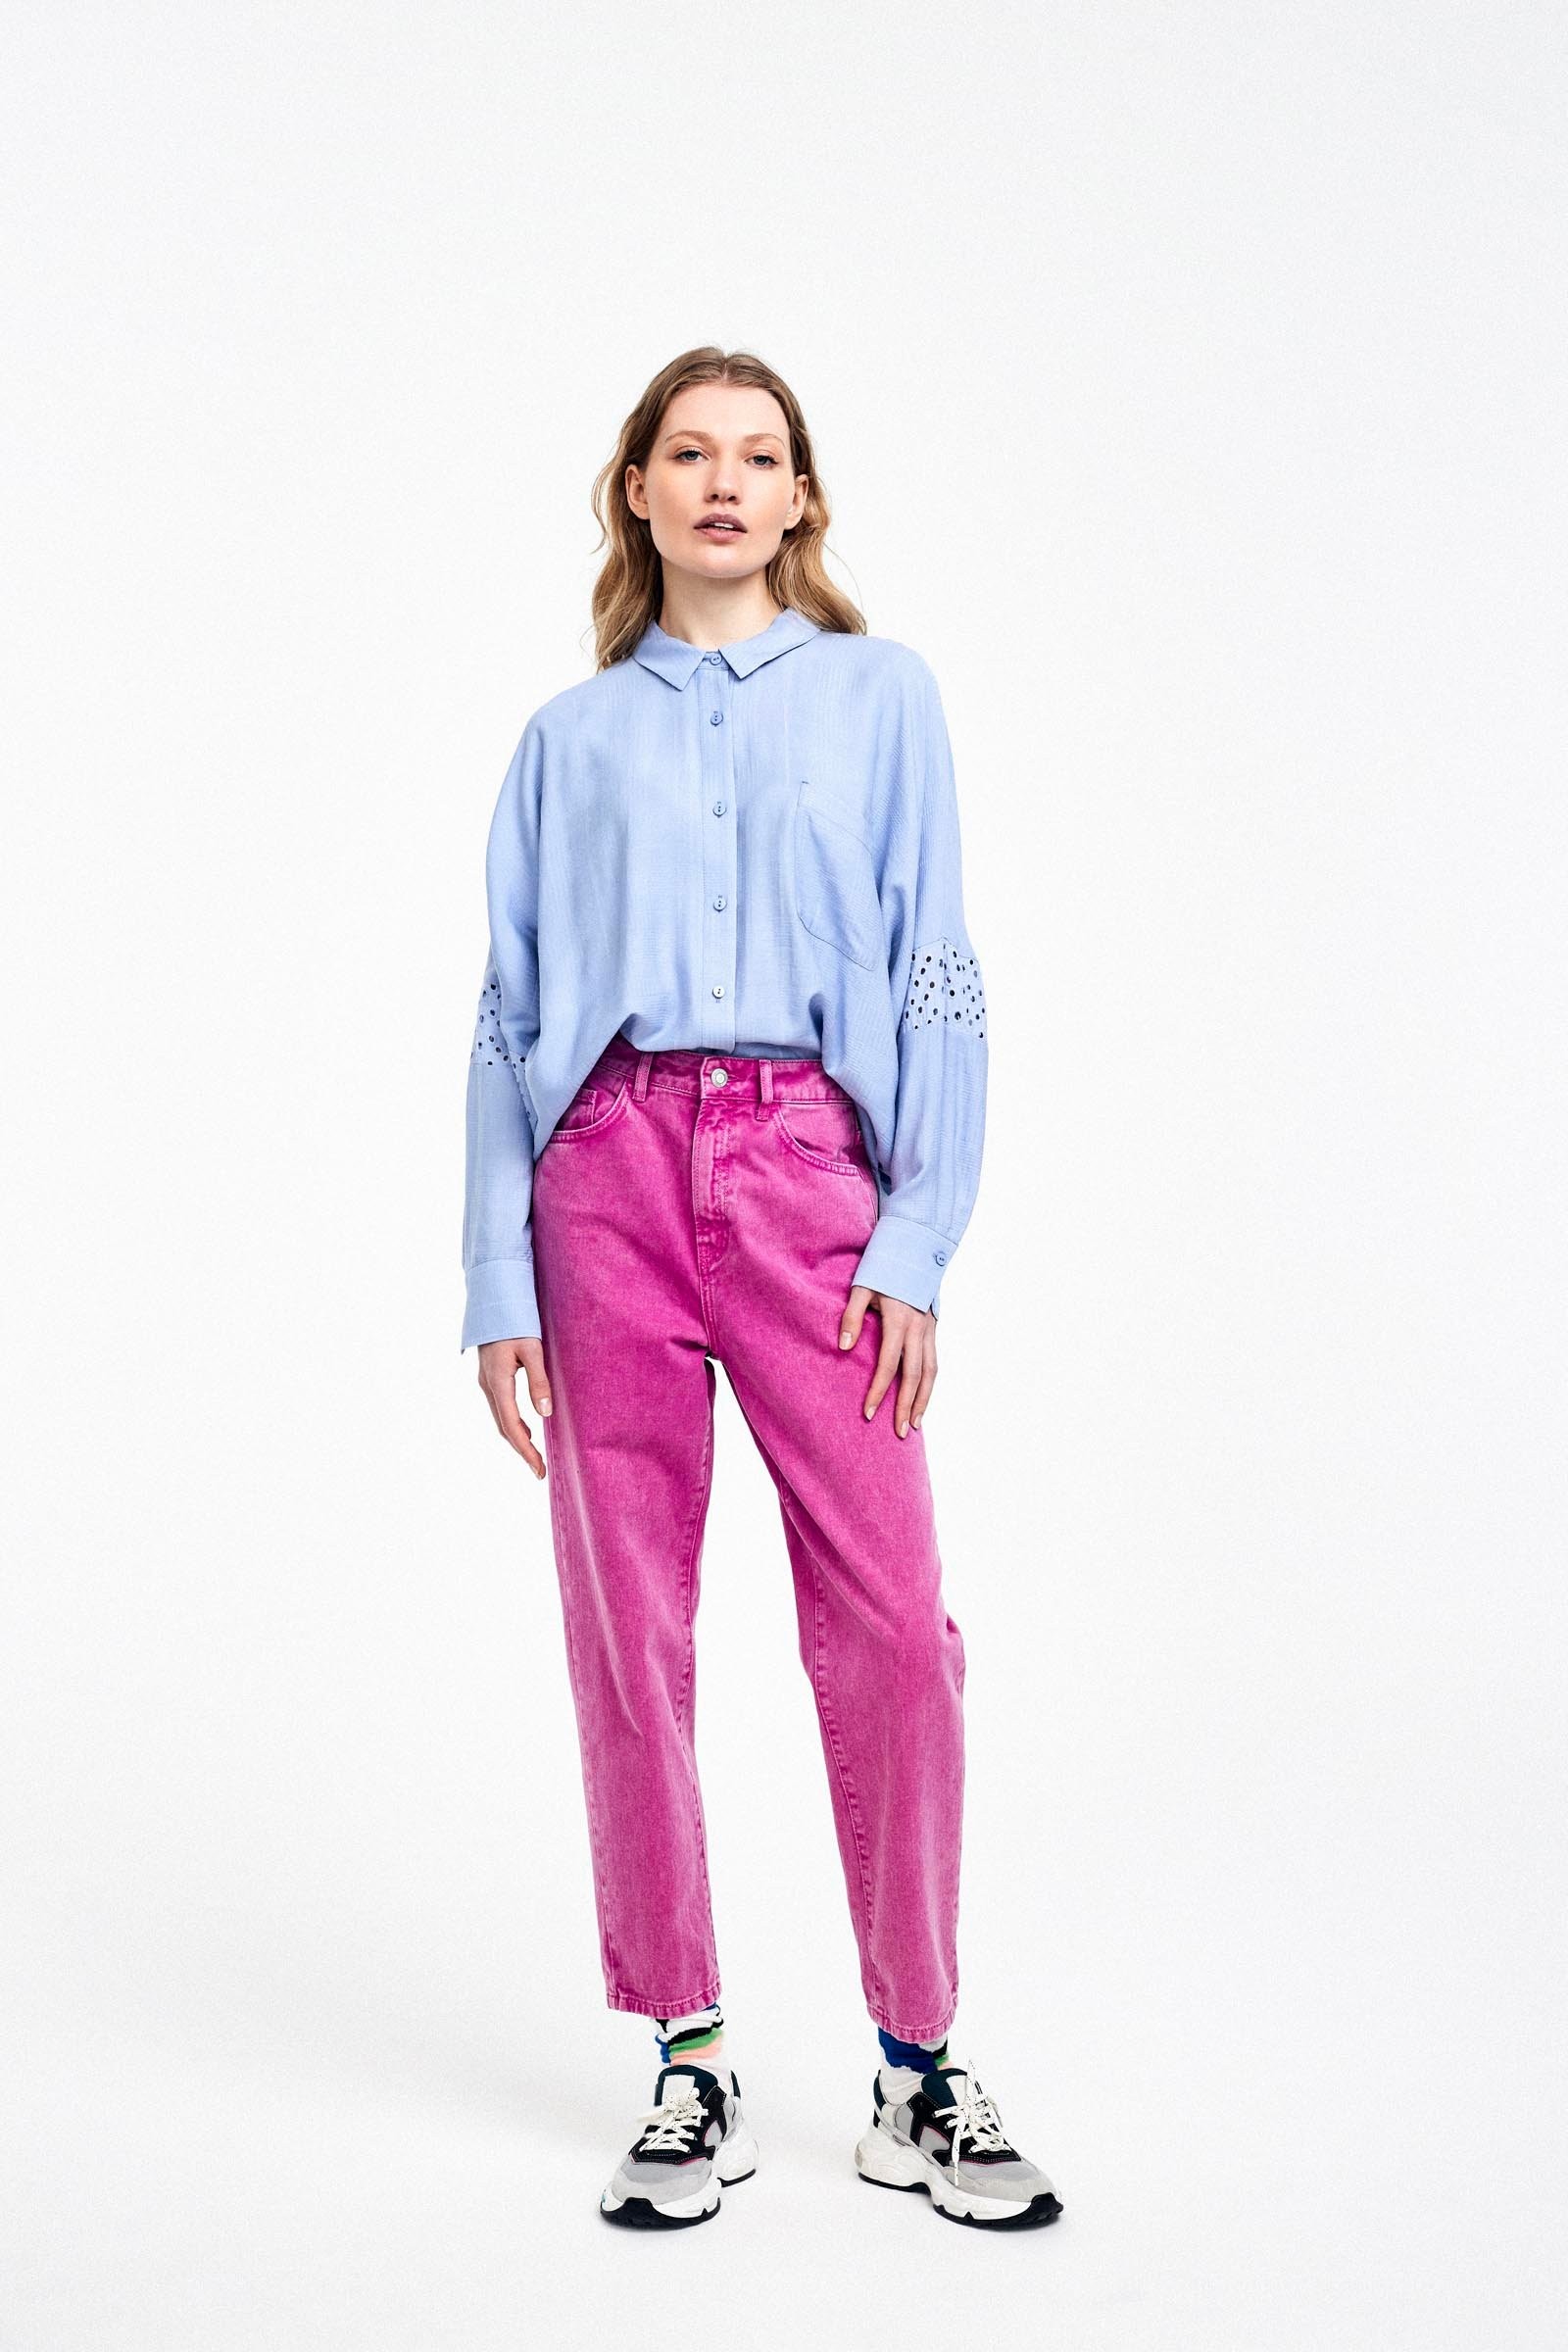 CKS Dames - LATINA - blouse lange mouwen - lila